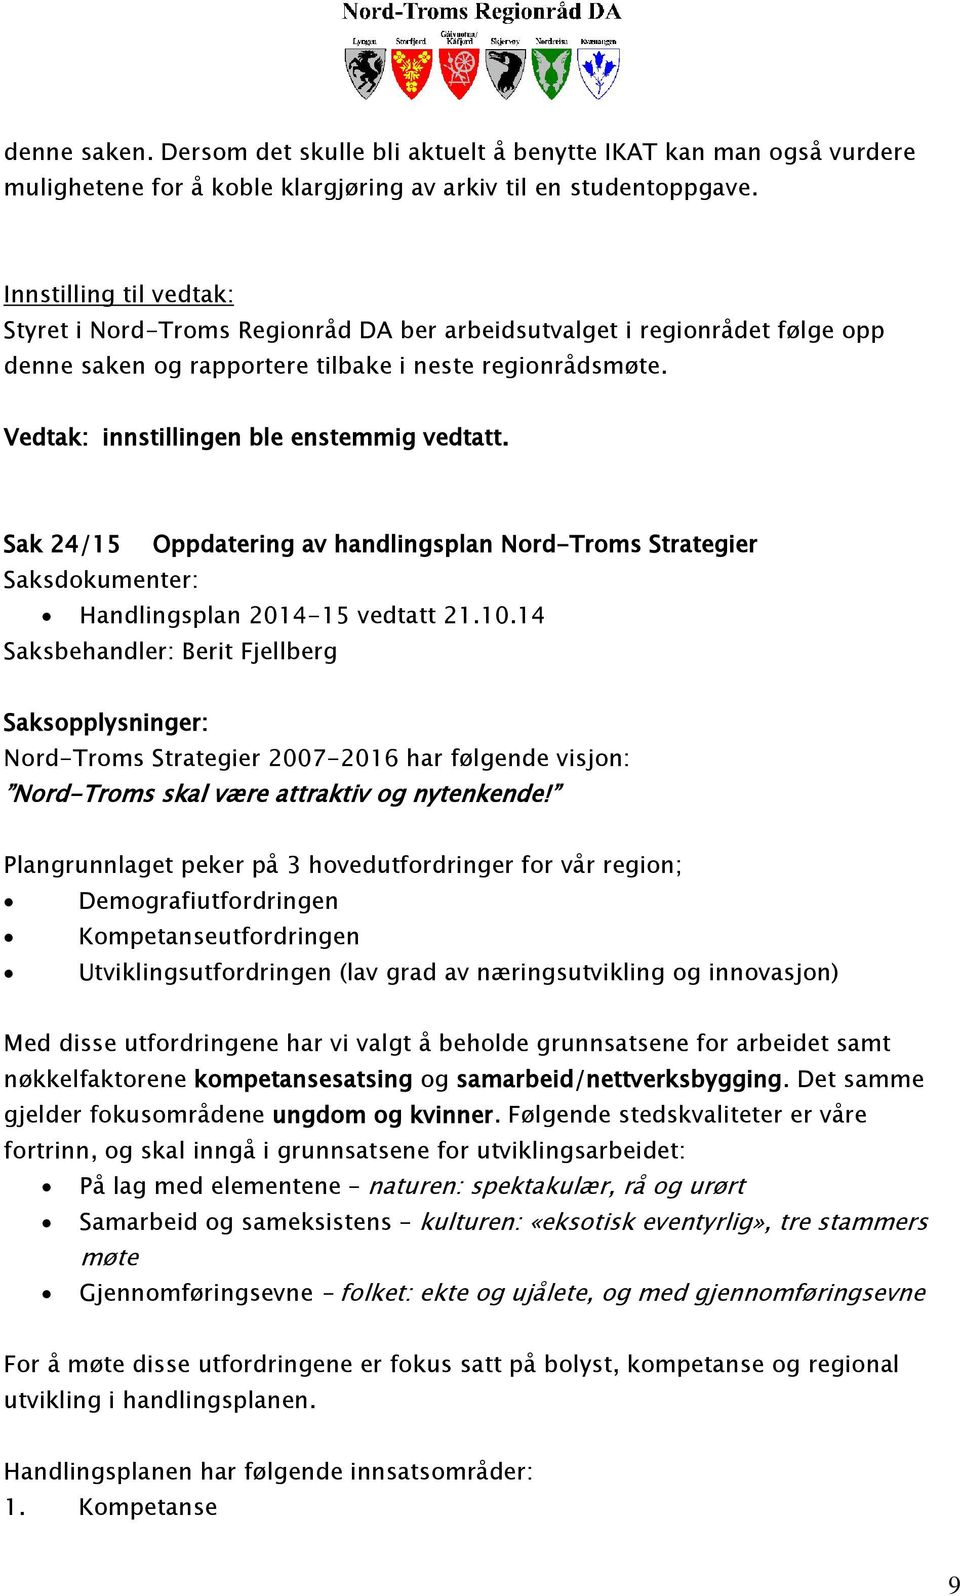 Vedtak: innstillingen ble enstemmig vedtatt. Sak 24/15 Oppdatering av handlingsplan Nord-Troms Strategier Saksdokumenter: Handlingsplan 2014-15 vedtatt 21.10.